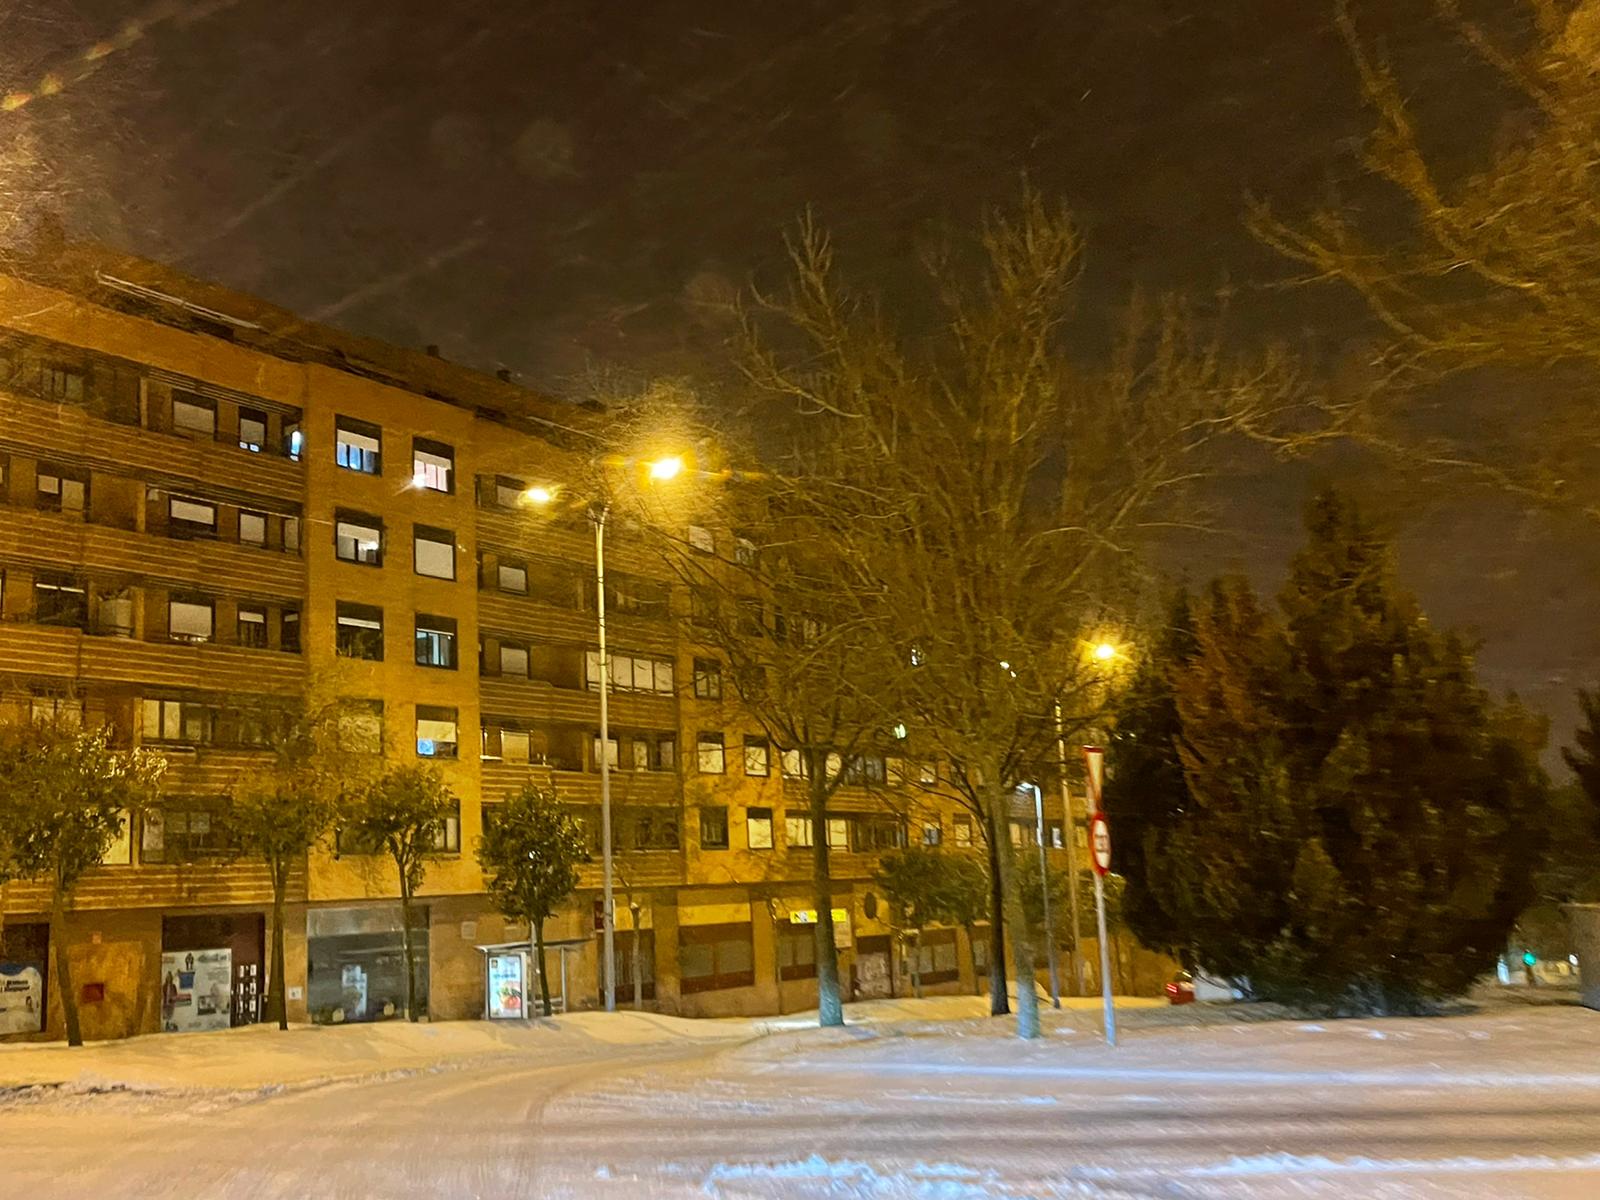 Nieve por las calles de Salamanca sábado noche (10)